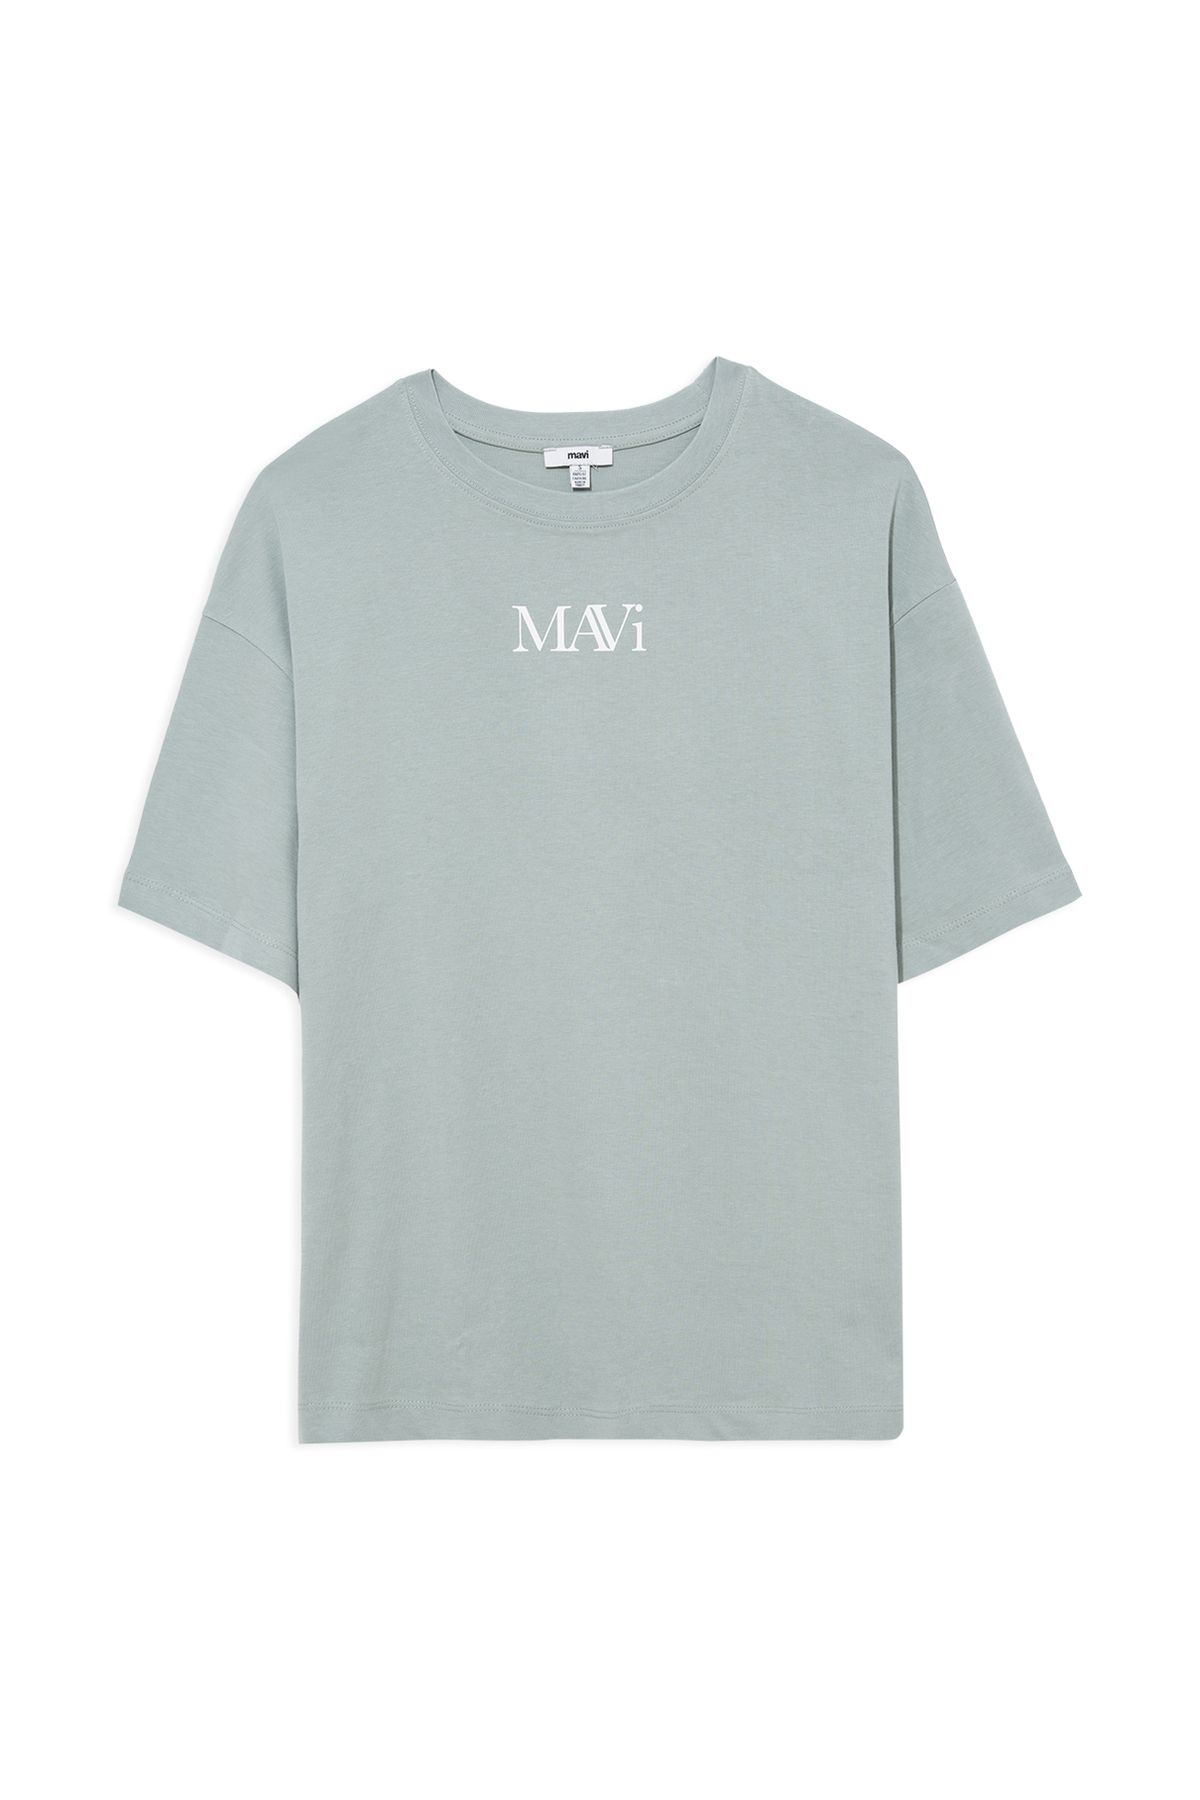 Mavi تی شرت سبز چاپی آرم بزرگ / بخش گسترده 1611593-71787